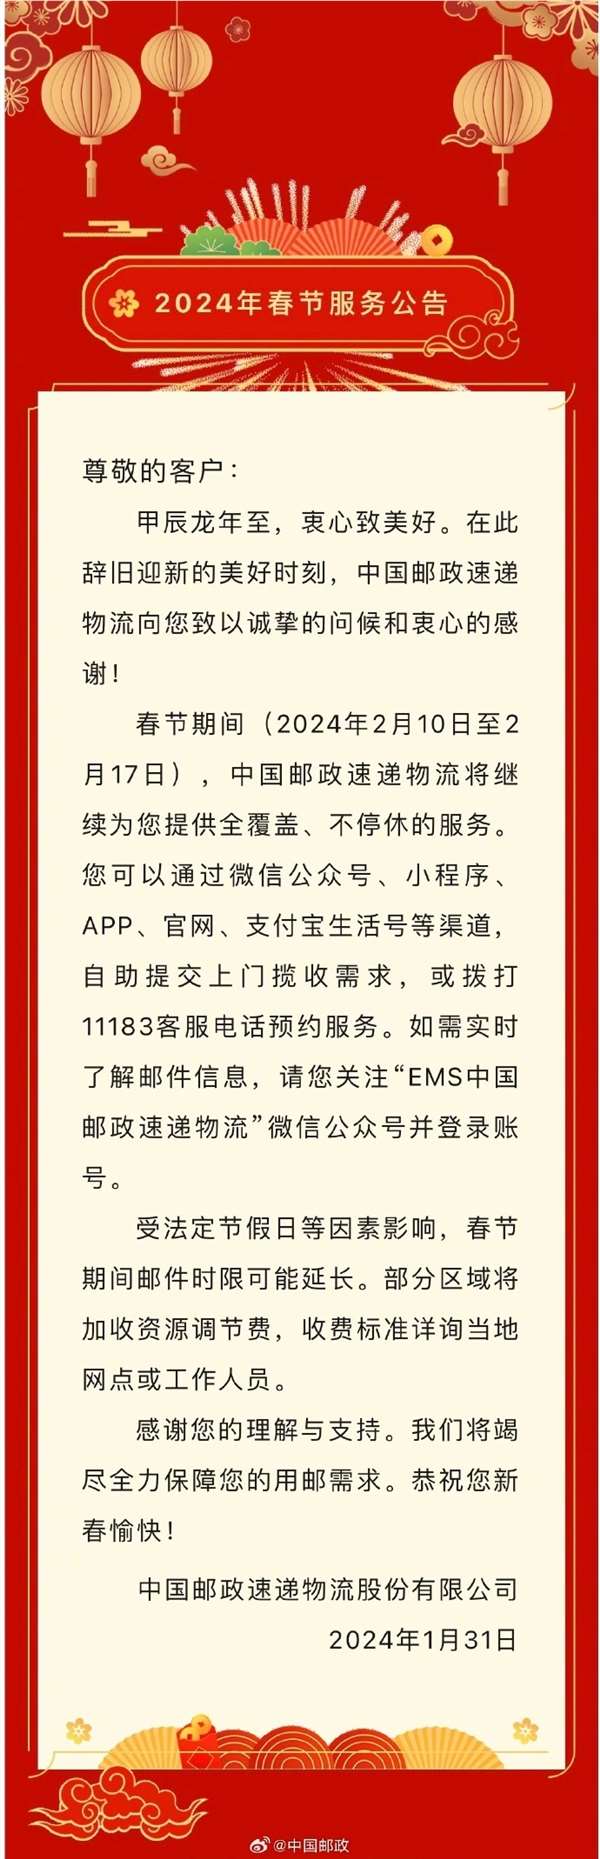 中国邮政宣布春节不打烊 部分区域加收调节费